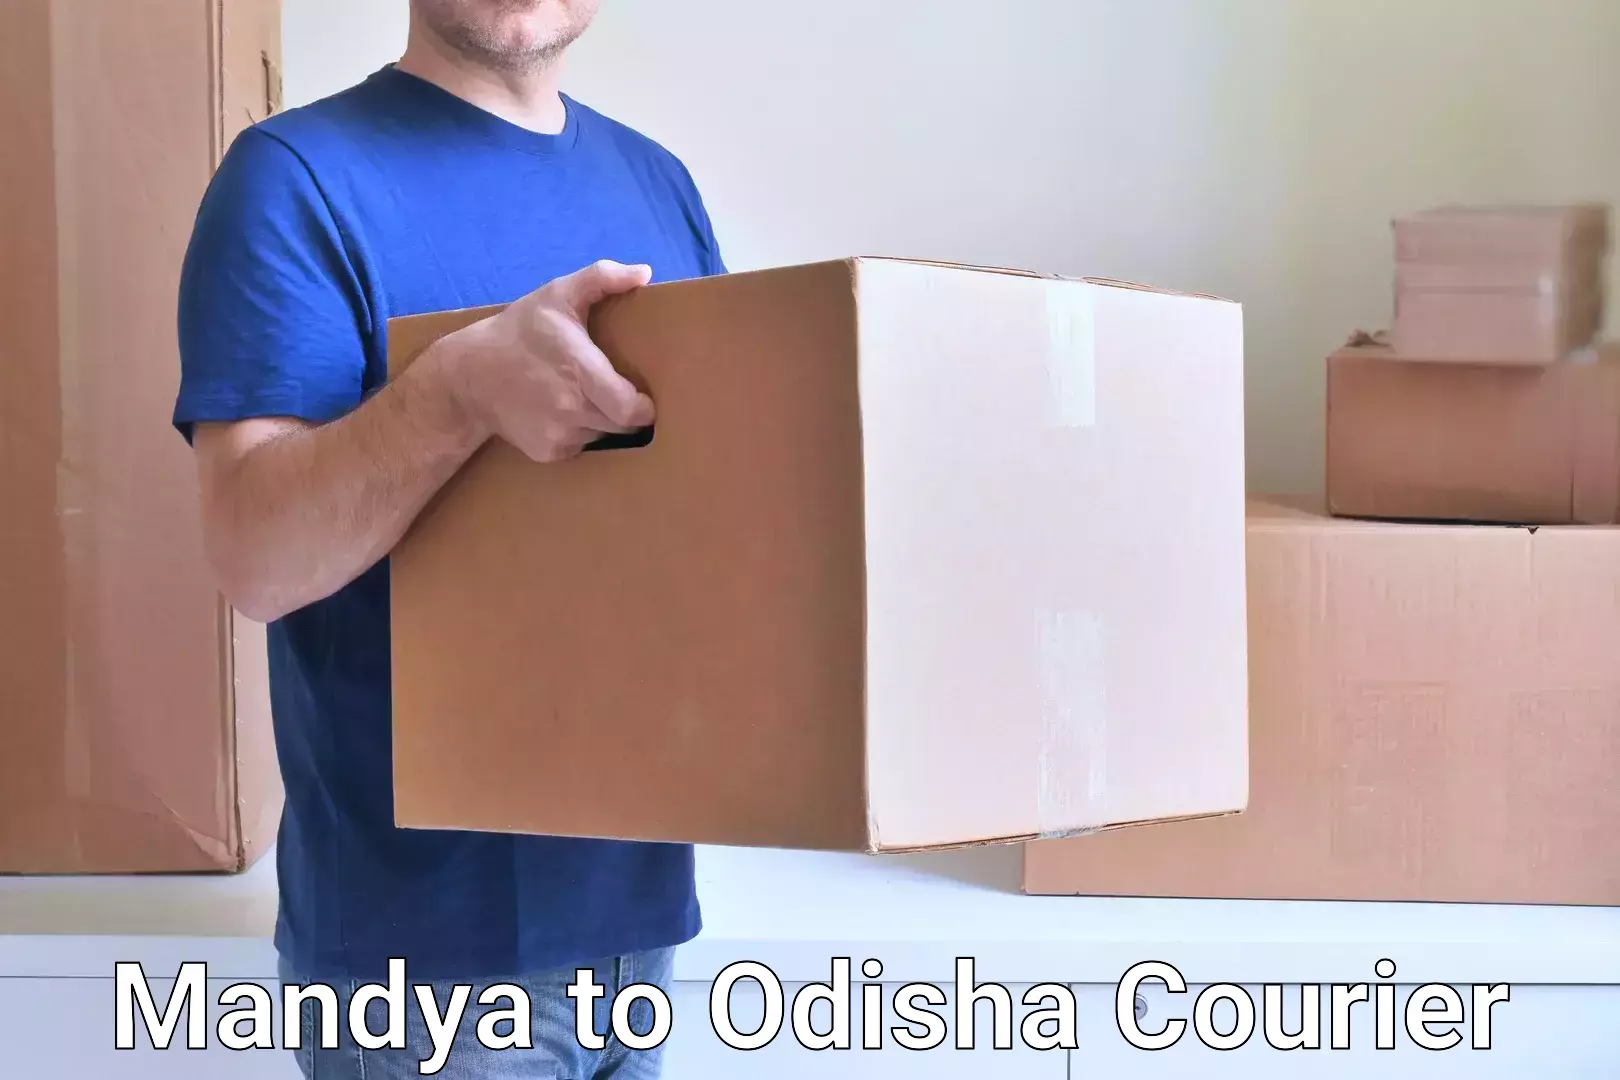 24-hour courier service Mandya to Sundargarh